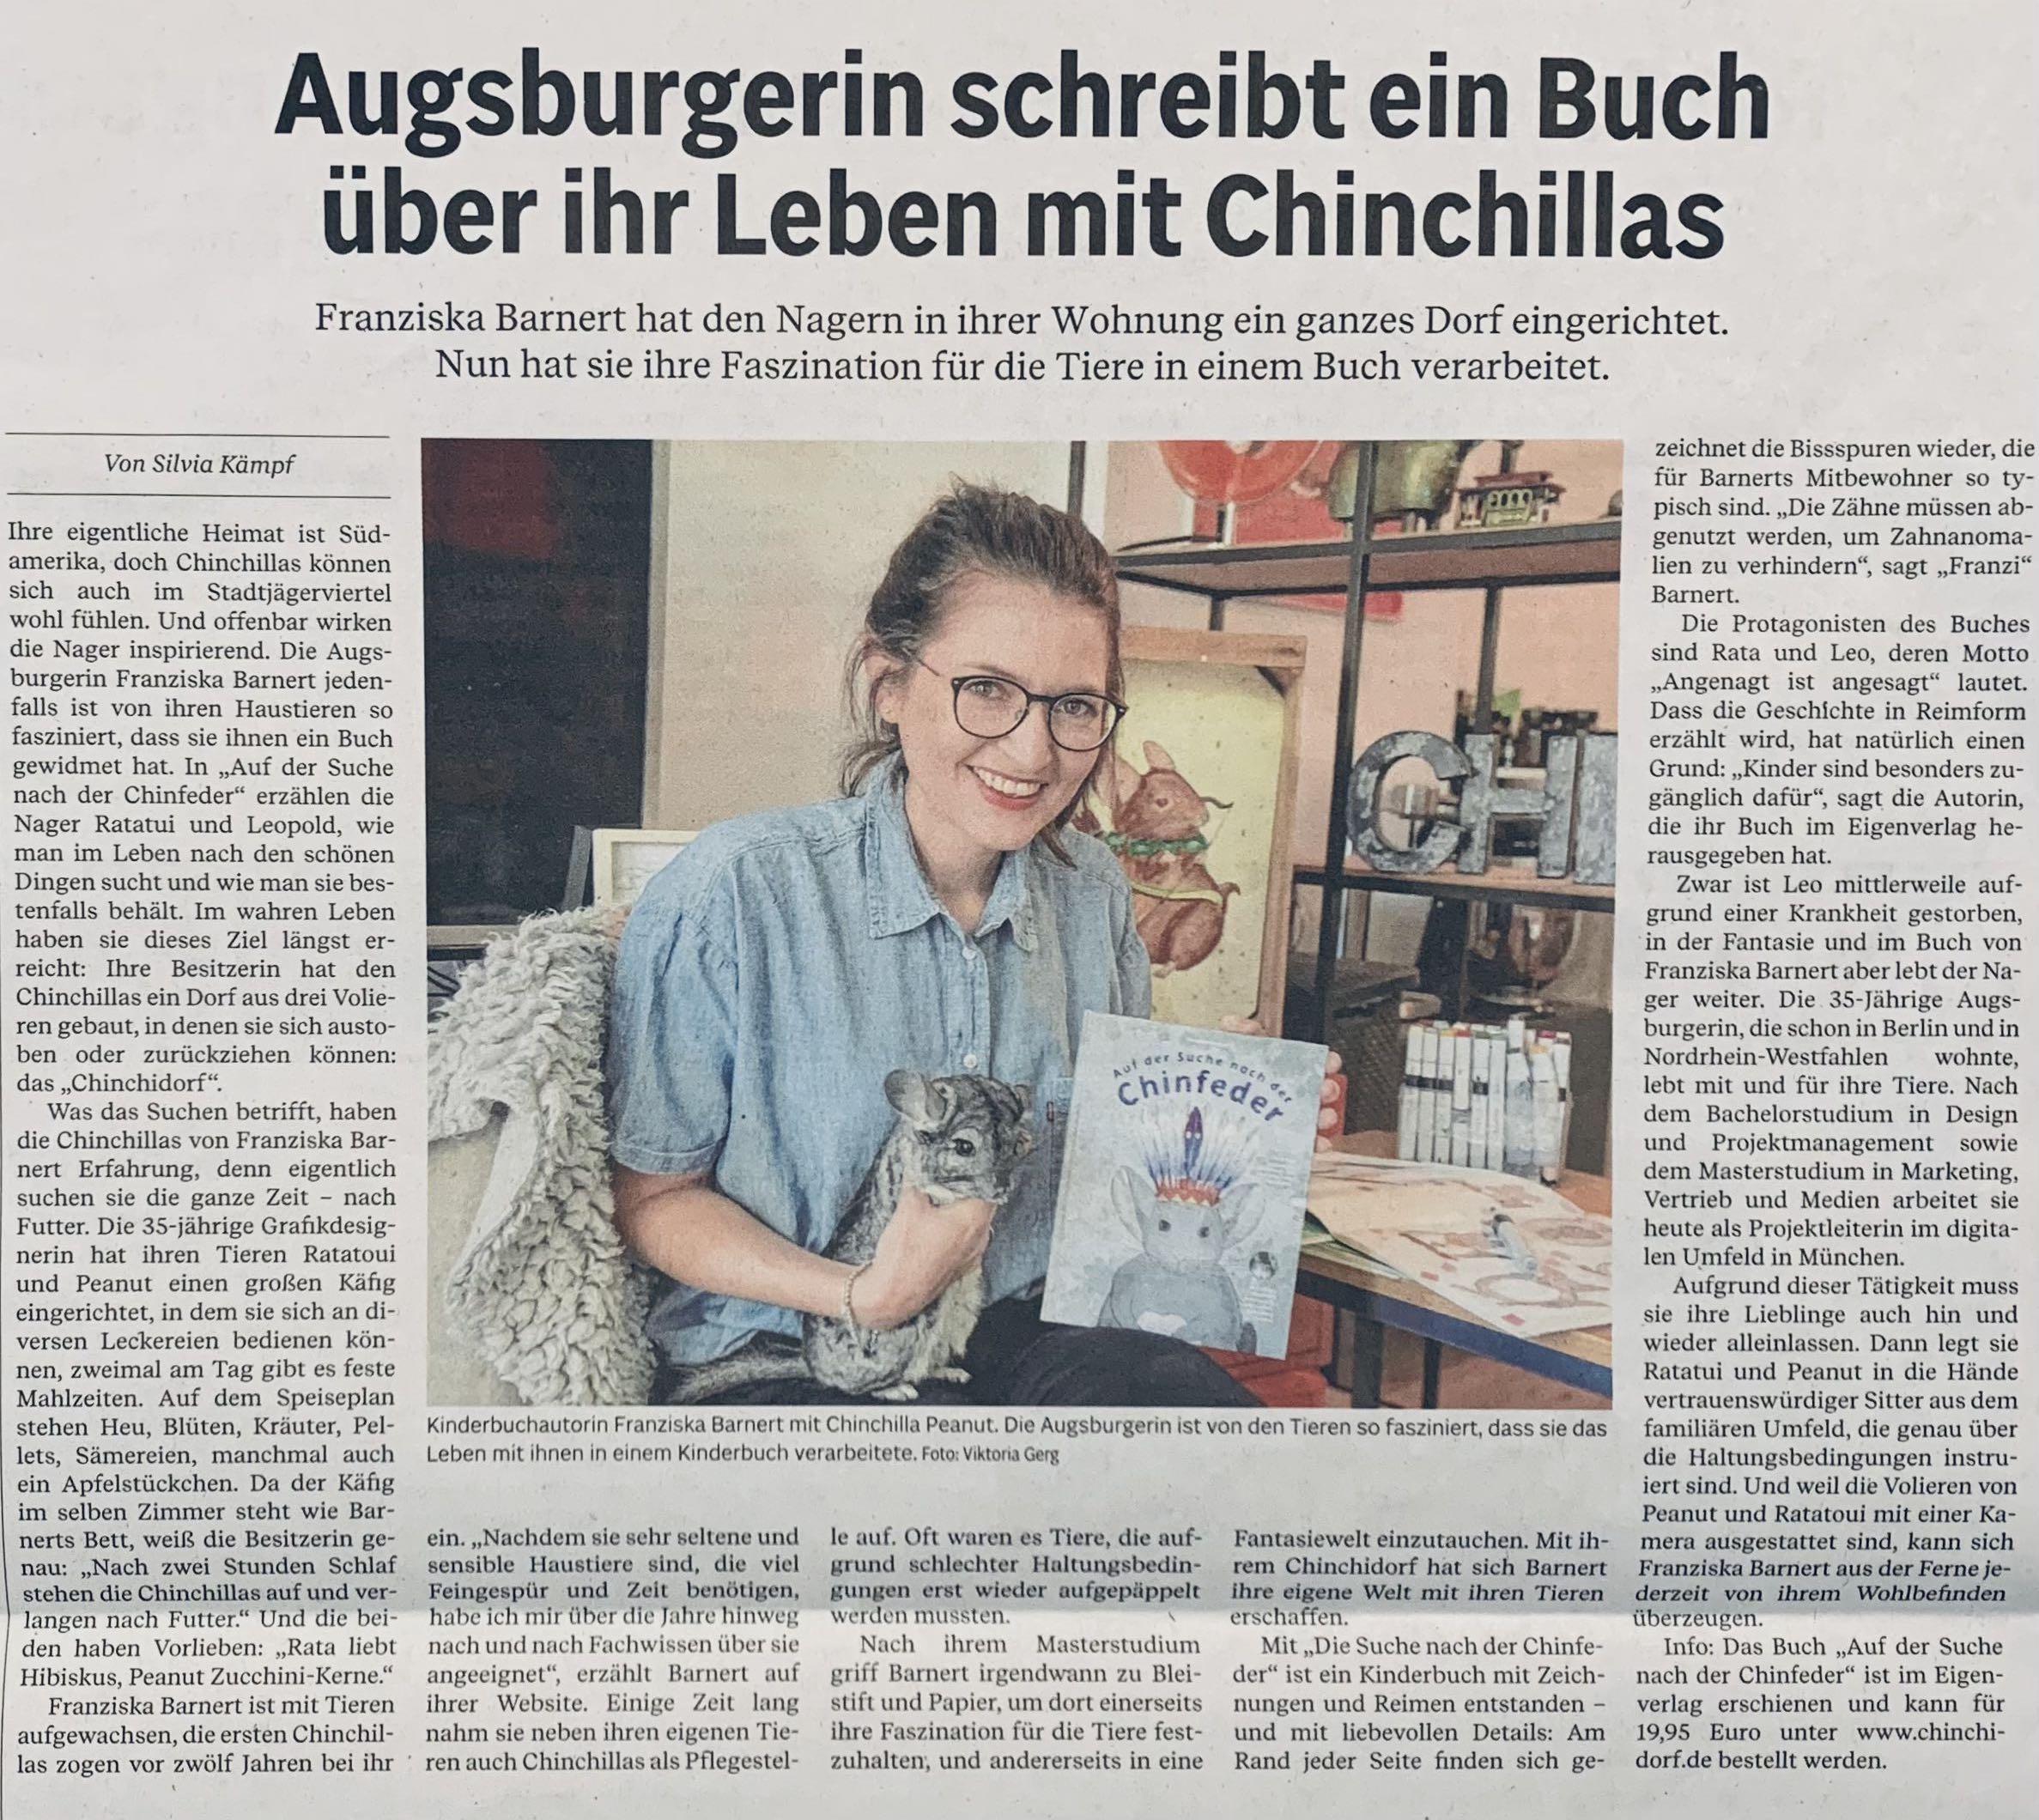 Chinchidorf-Chinchilla- Chinfeder-Buch-Franziska-Barnert-Zeitung-interview-Augsburger-Allgemeine